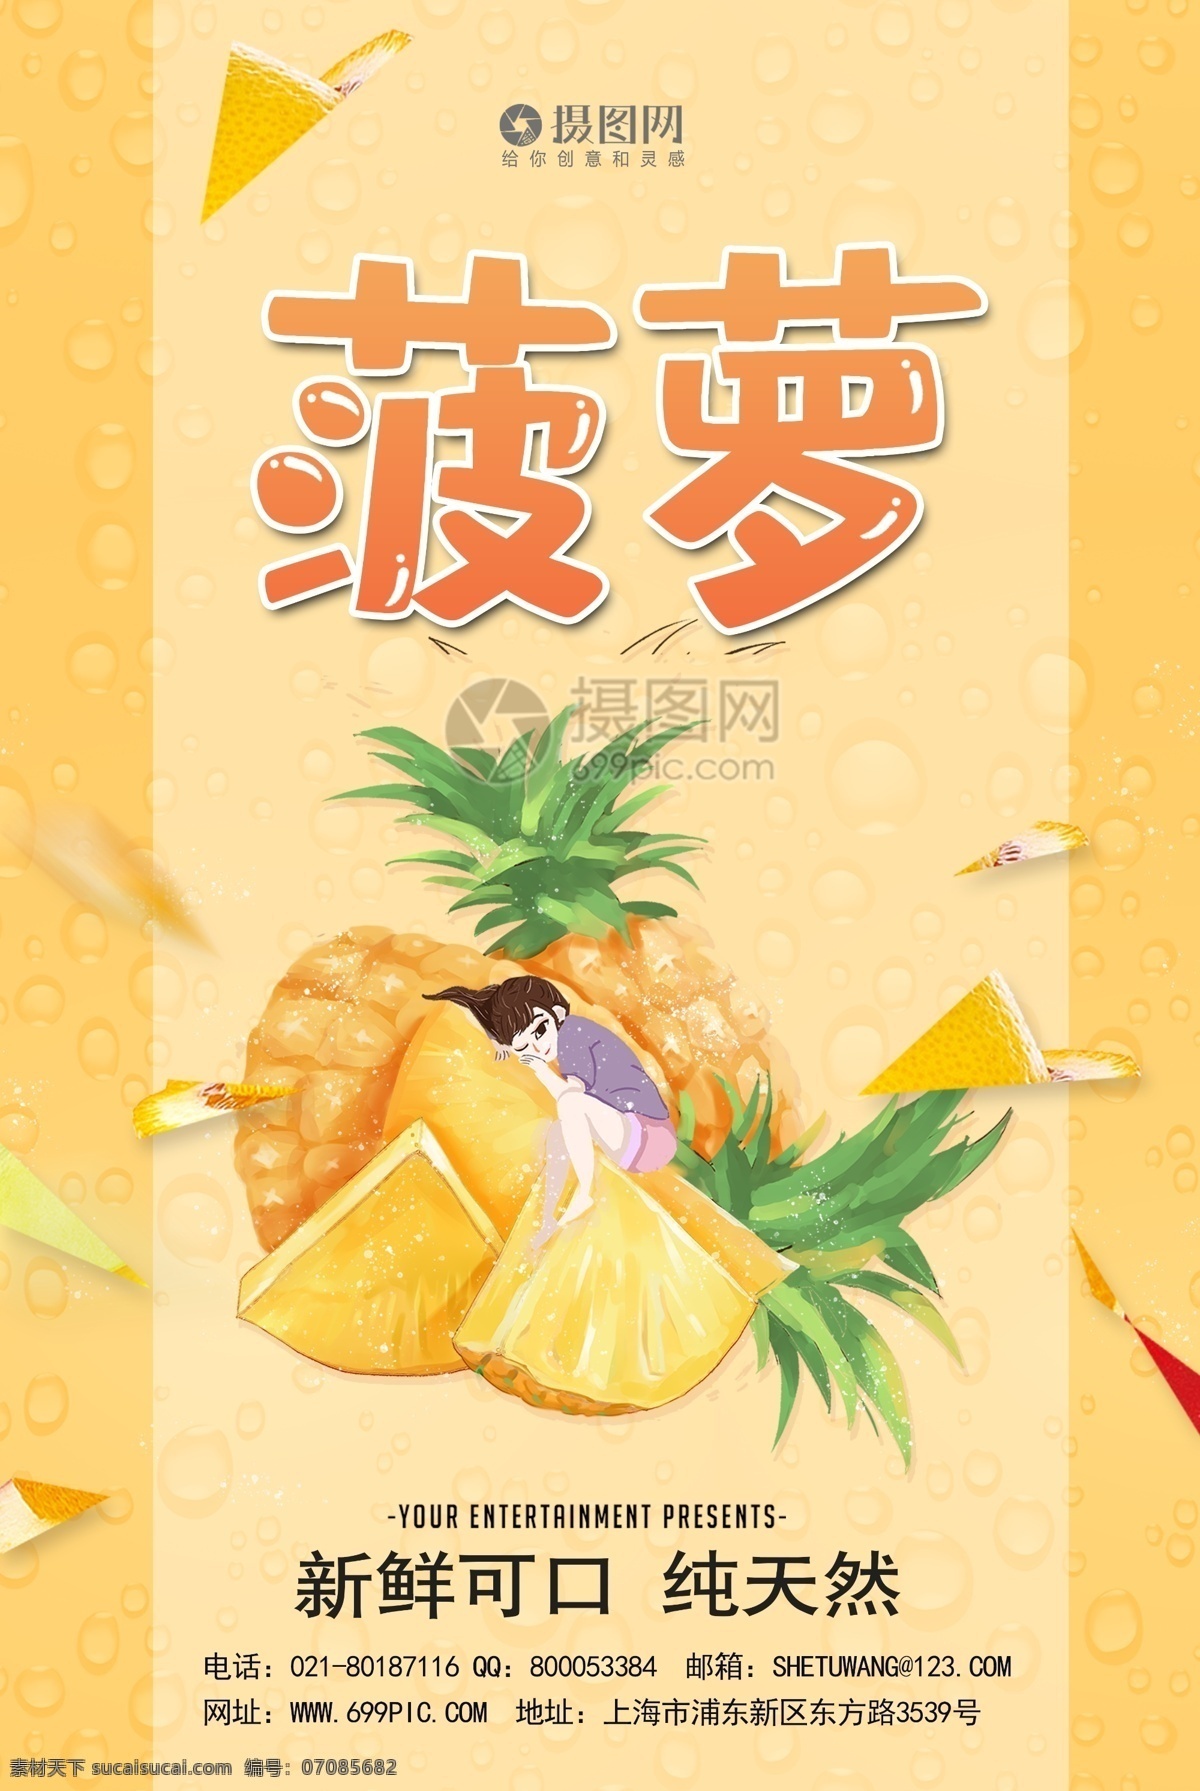 小 清新 水果 菠萝 宣传海报 模板 菠萝海报 水果海报 泰国菠萝 菠萝宣传 菠萝促销 农家菠萝 新鲜菠萝 进口菠萝 水果促销 新鲜水果 酸甜菠萝